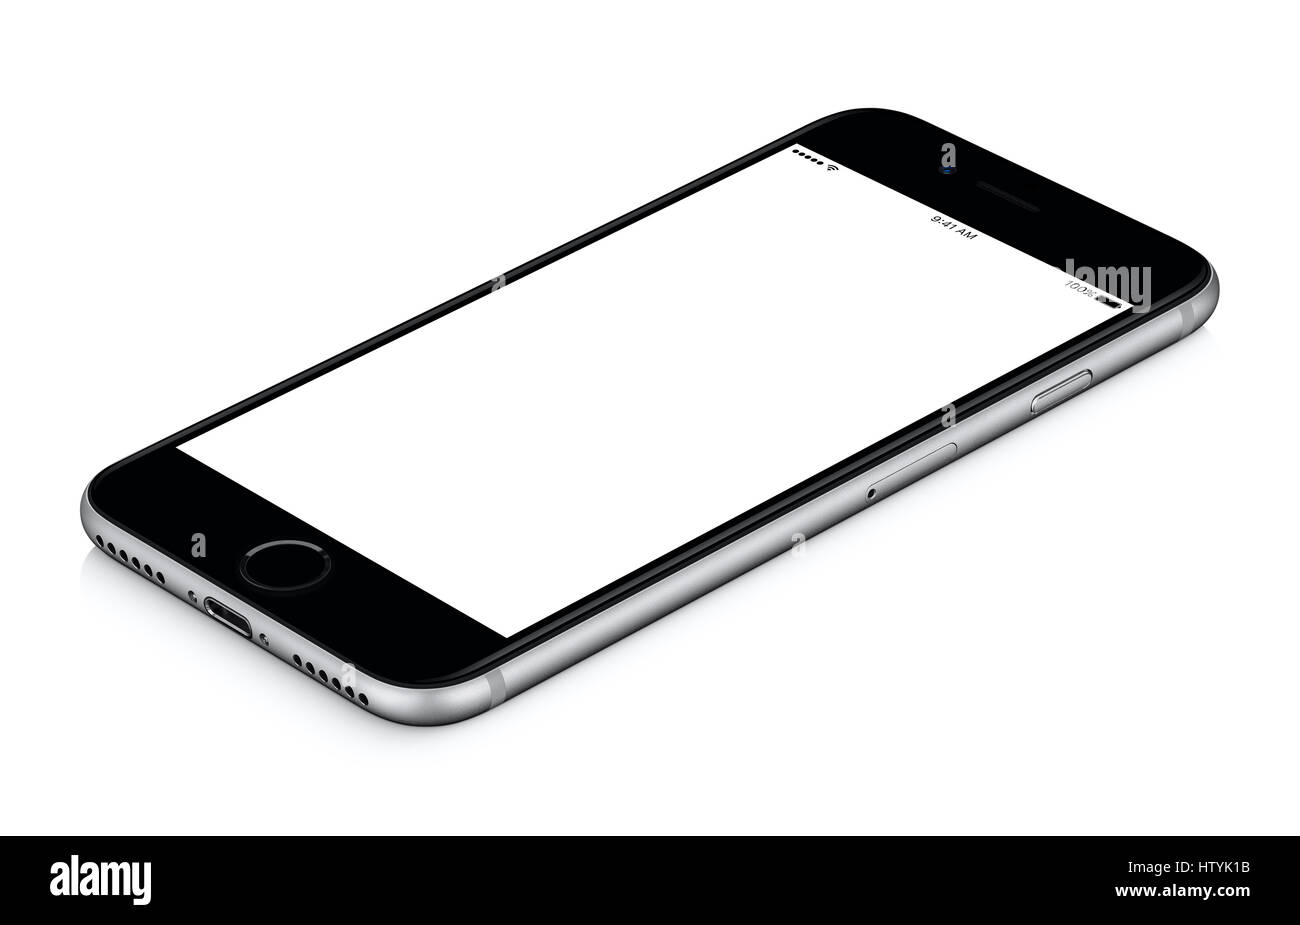 Schwarz mobile Smartphone-Modell im Uhrzeigersinn gedreht, liegt auf der Oberfläche mit unbelegten Schirm isoliert auf weißem Hintergrund. Stockfoto